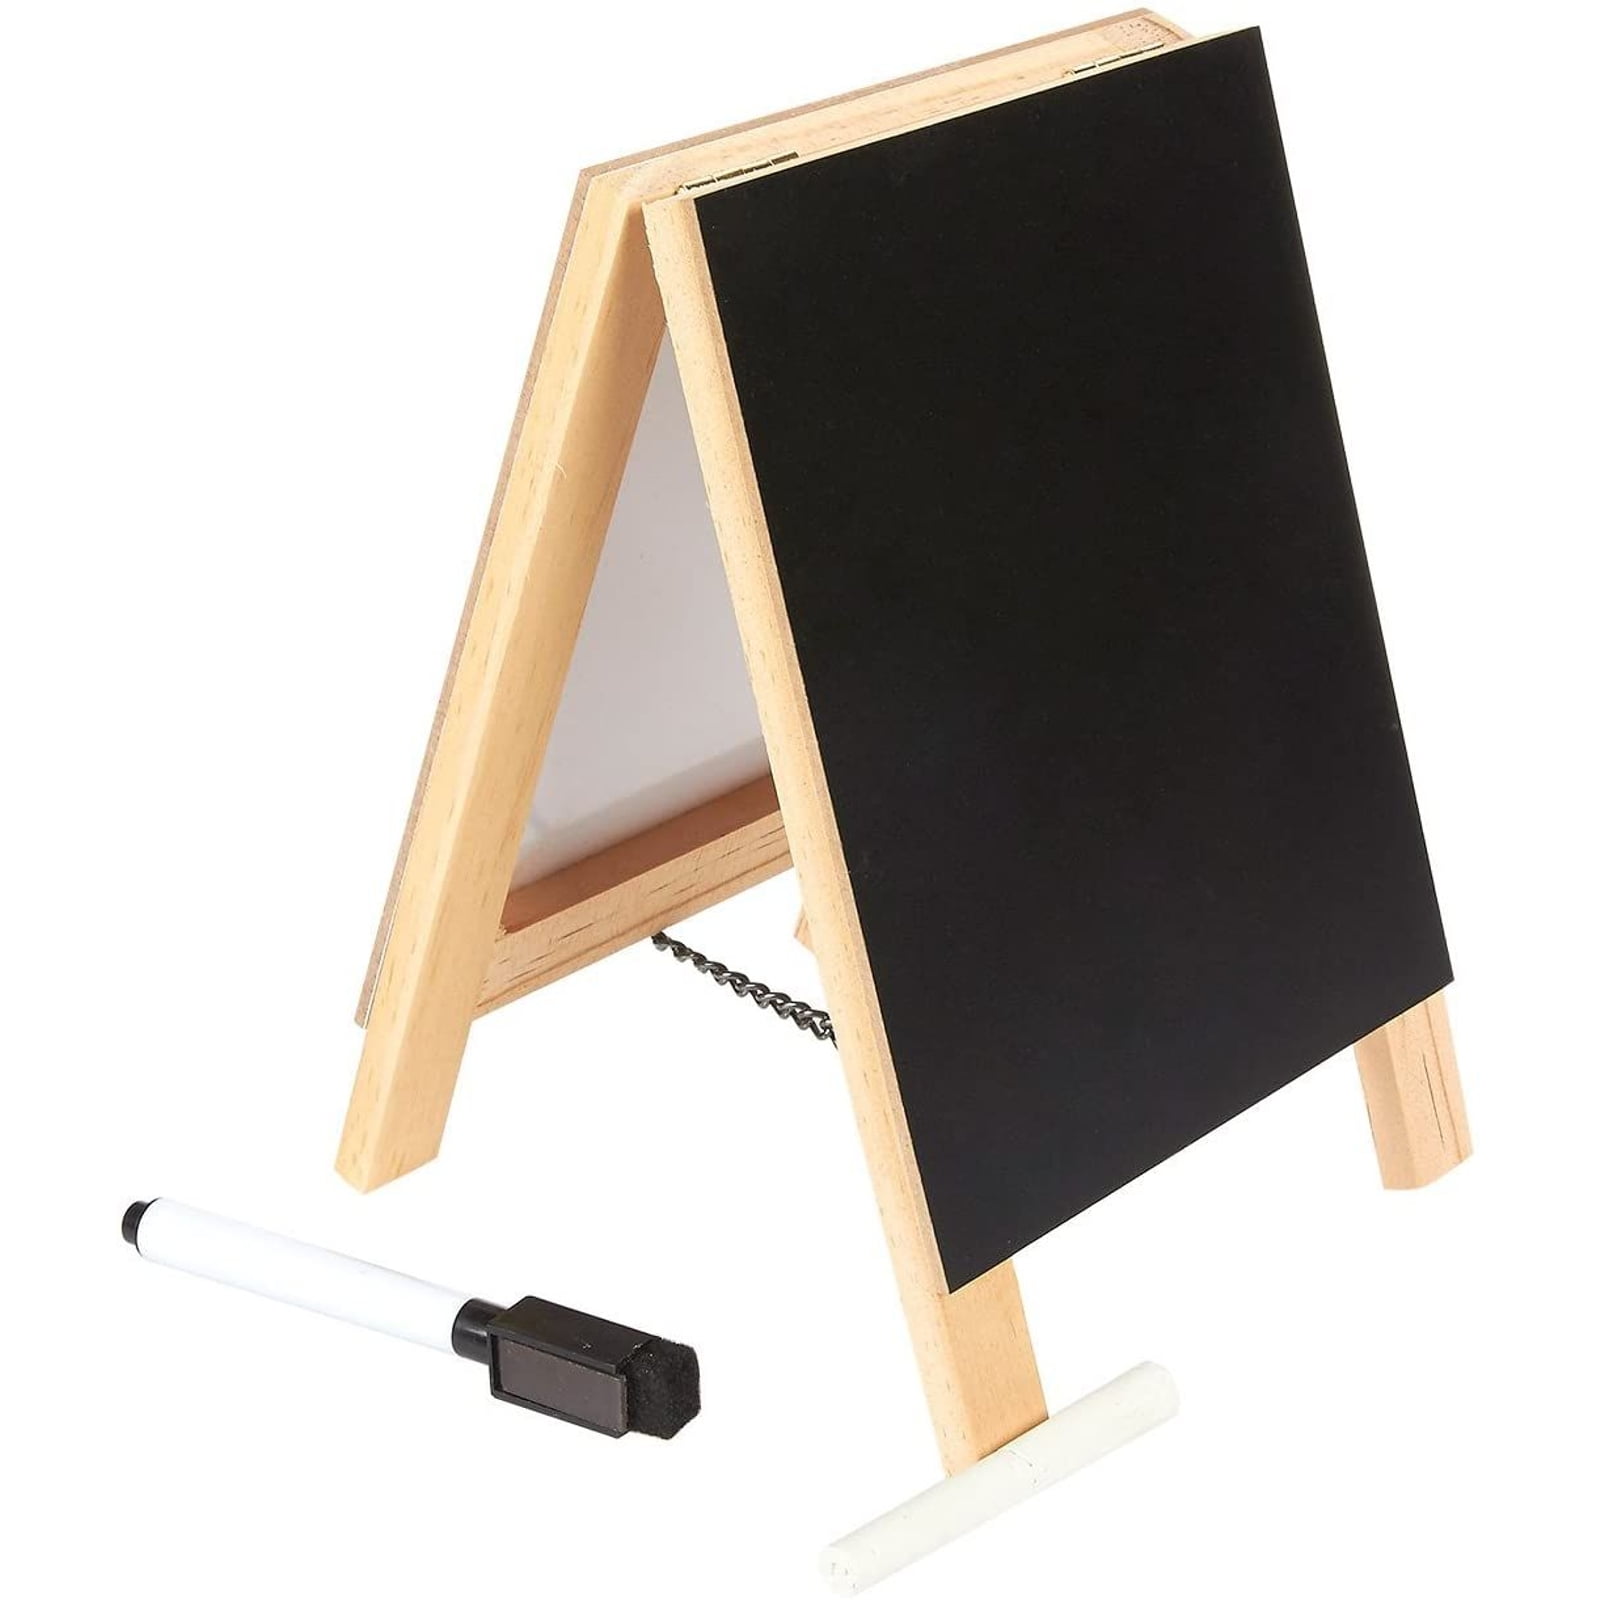 Mini Blackboard Wooden Easel Chalkboard Memo Board Cafe Bar Countertop Decor 